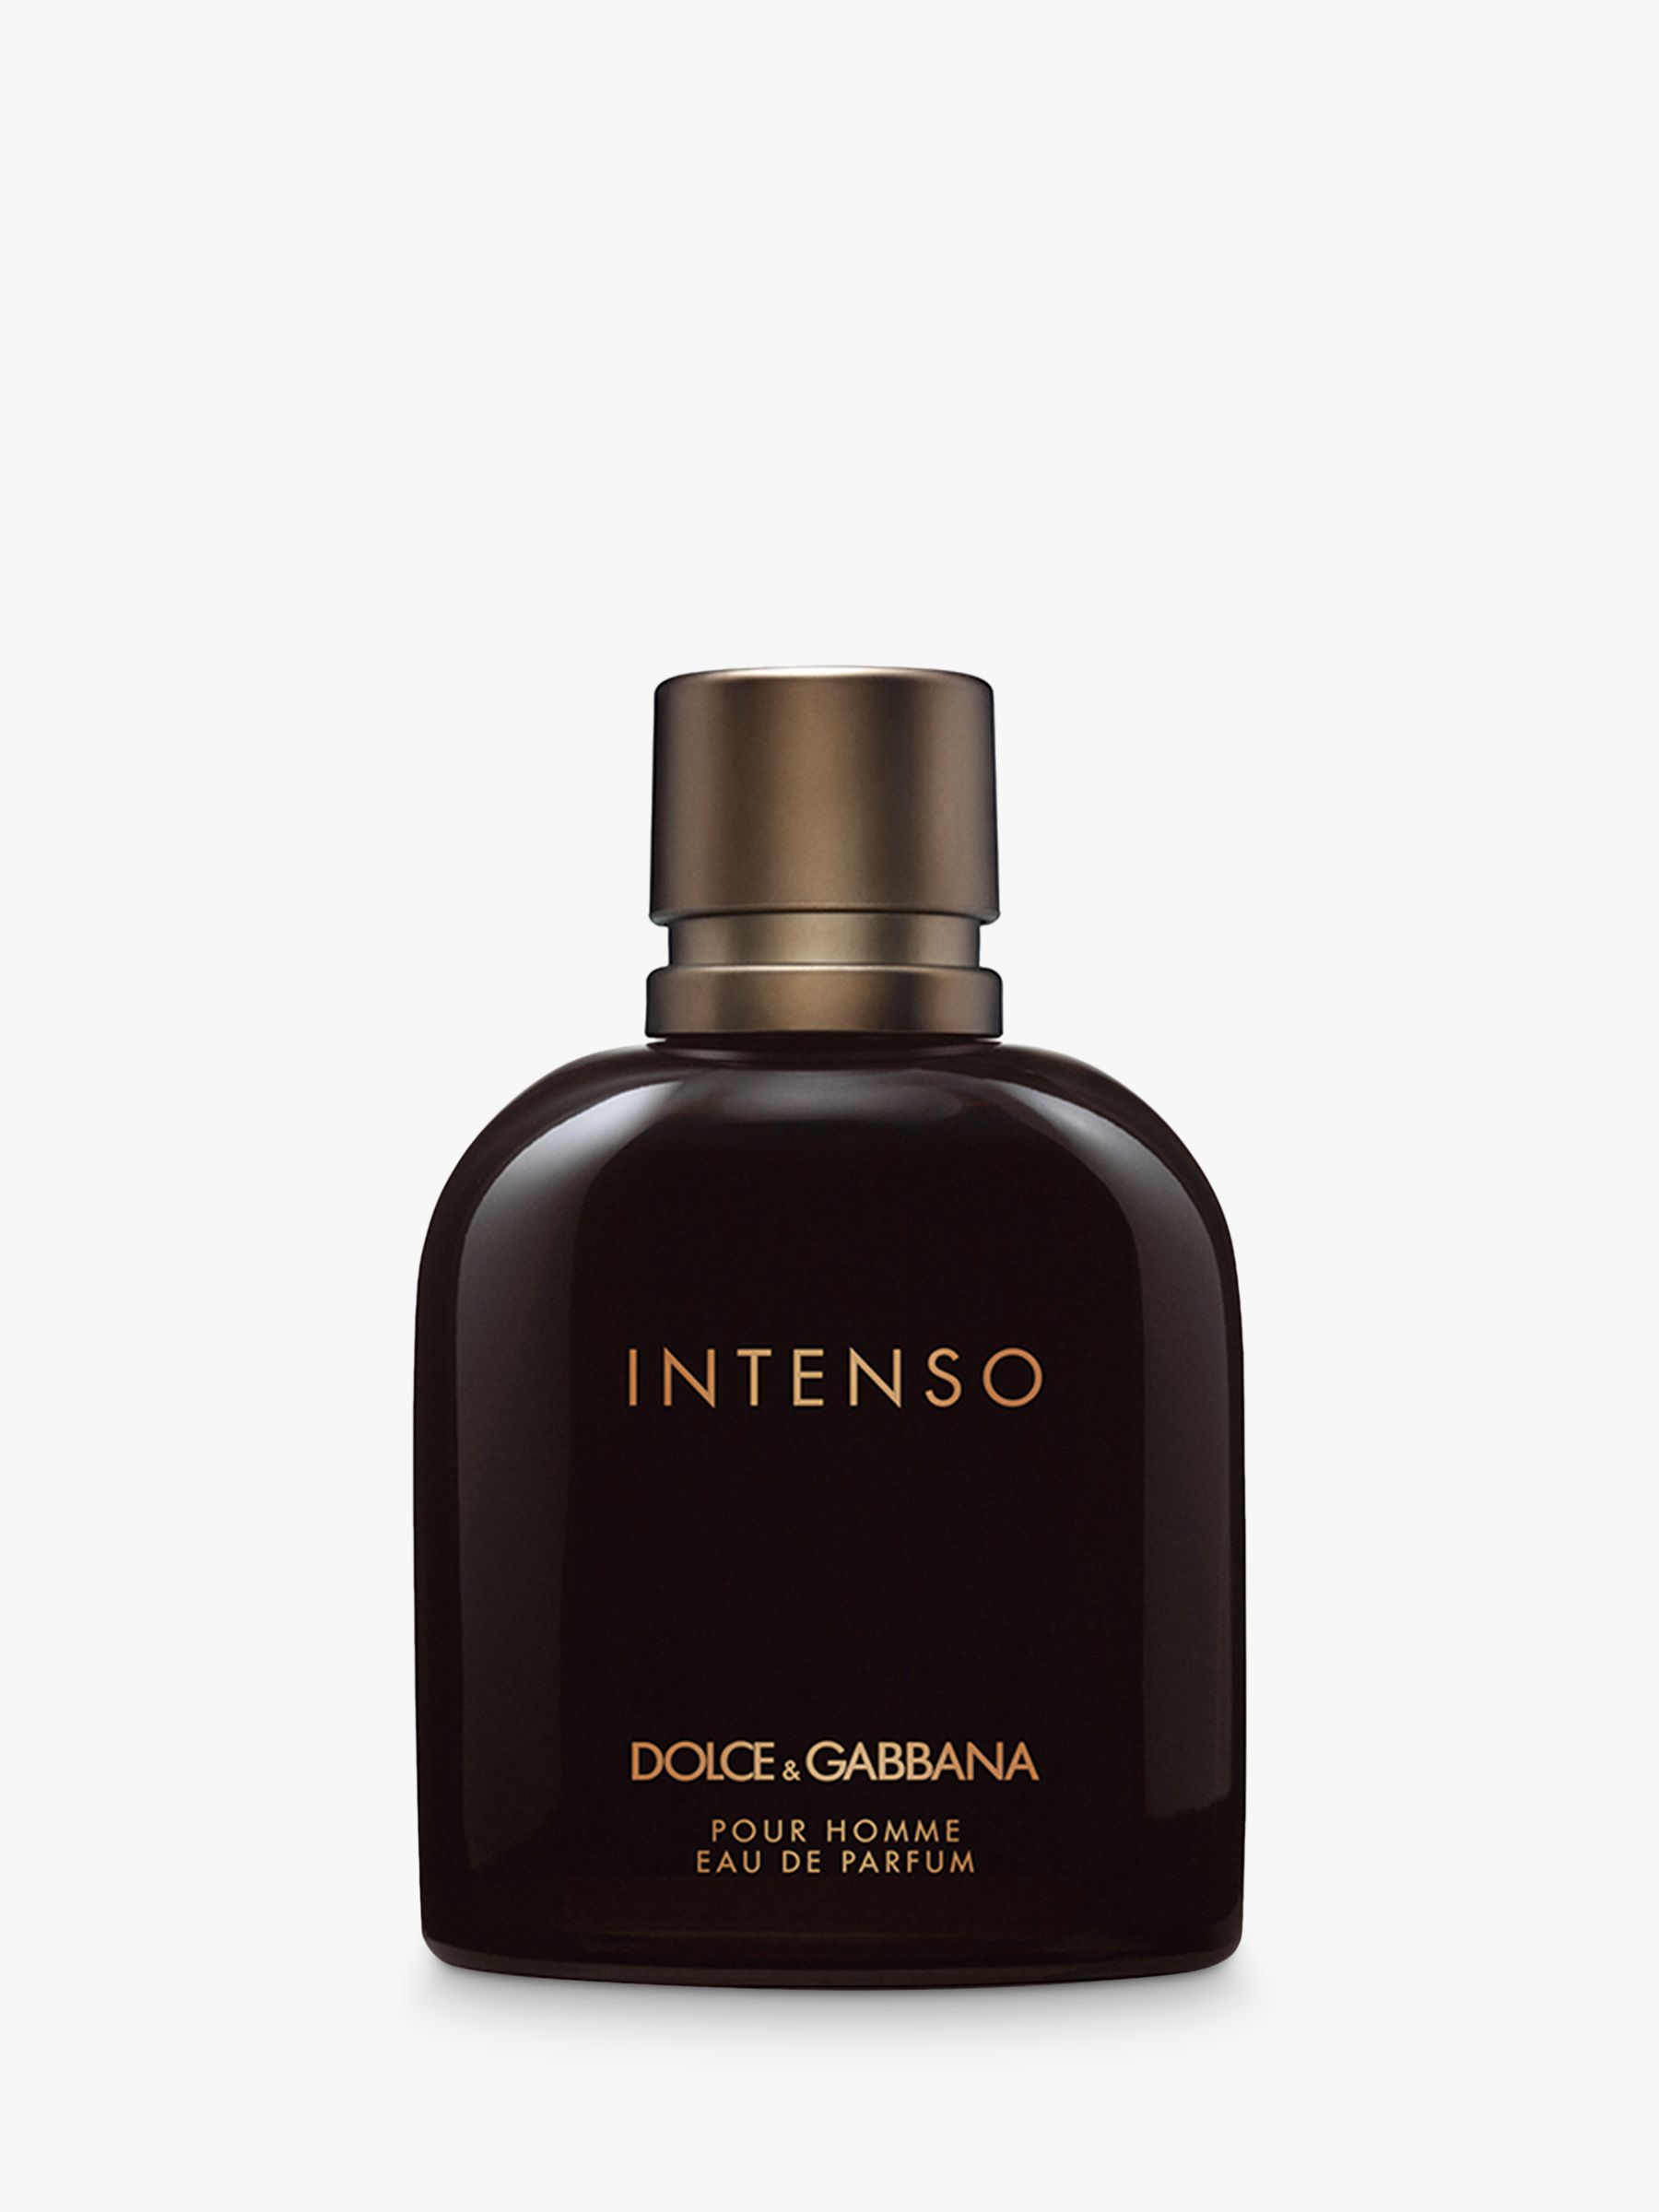 Dolce & Gabbana Intenso Pour Homme Eau de Parfum, 100ml at John Lewis &  Partners